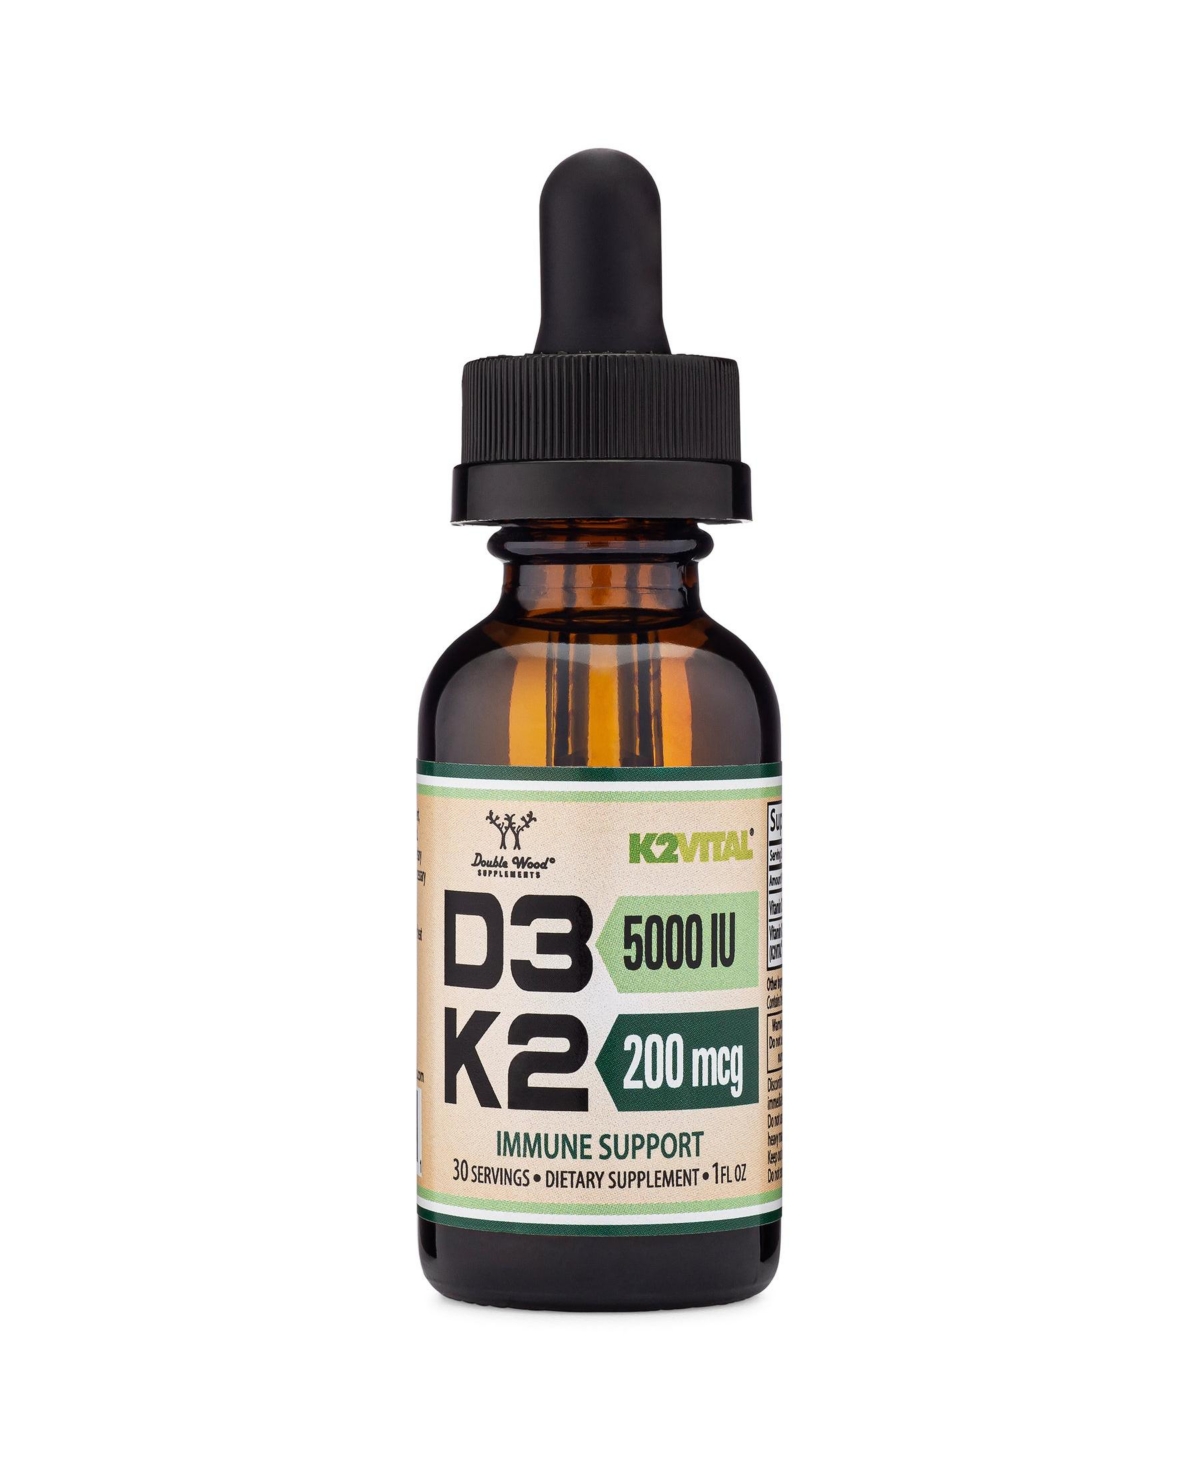 Vitamin D3 + K2 Liquid - 5000 Iu D3, 200 mcg K2 / mL, 30 servings